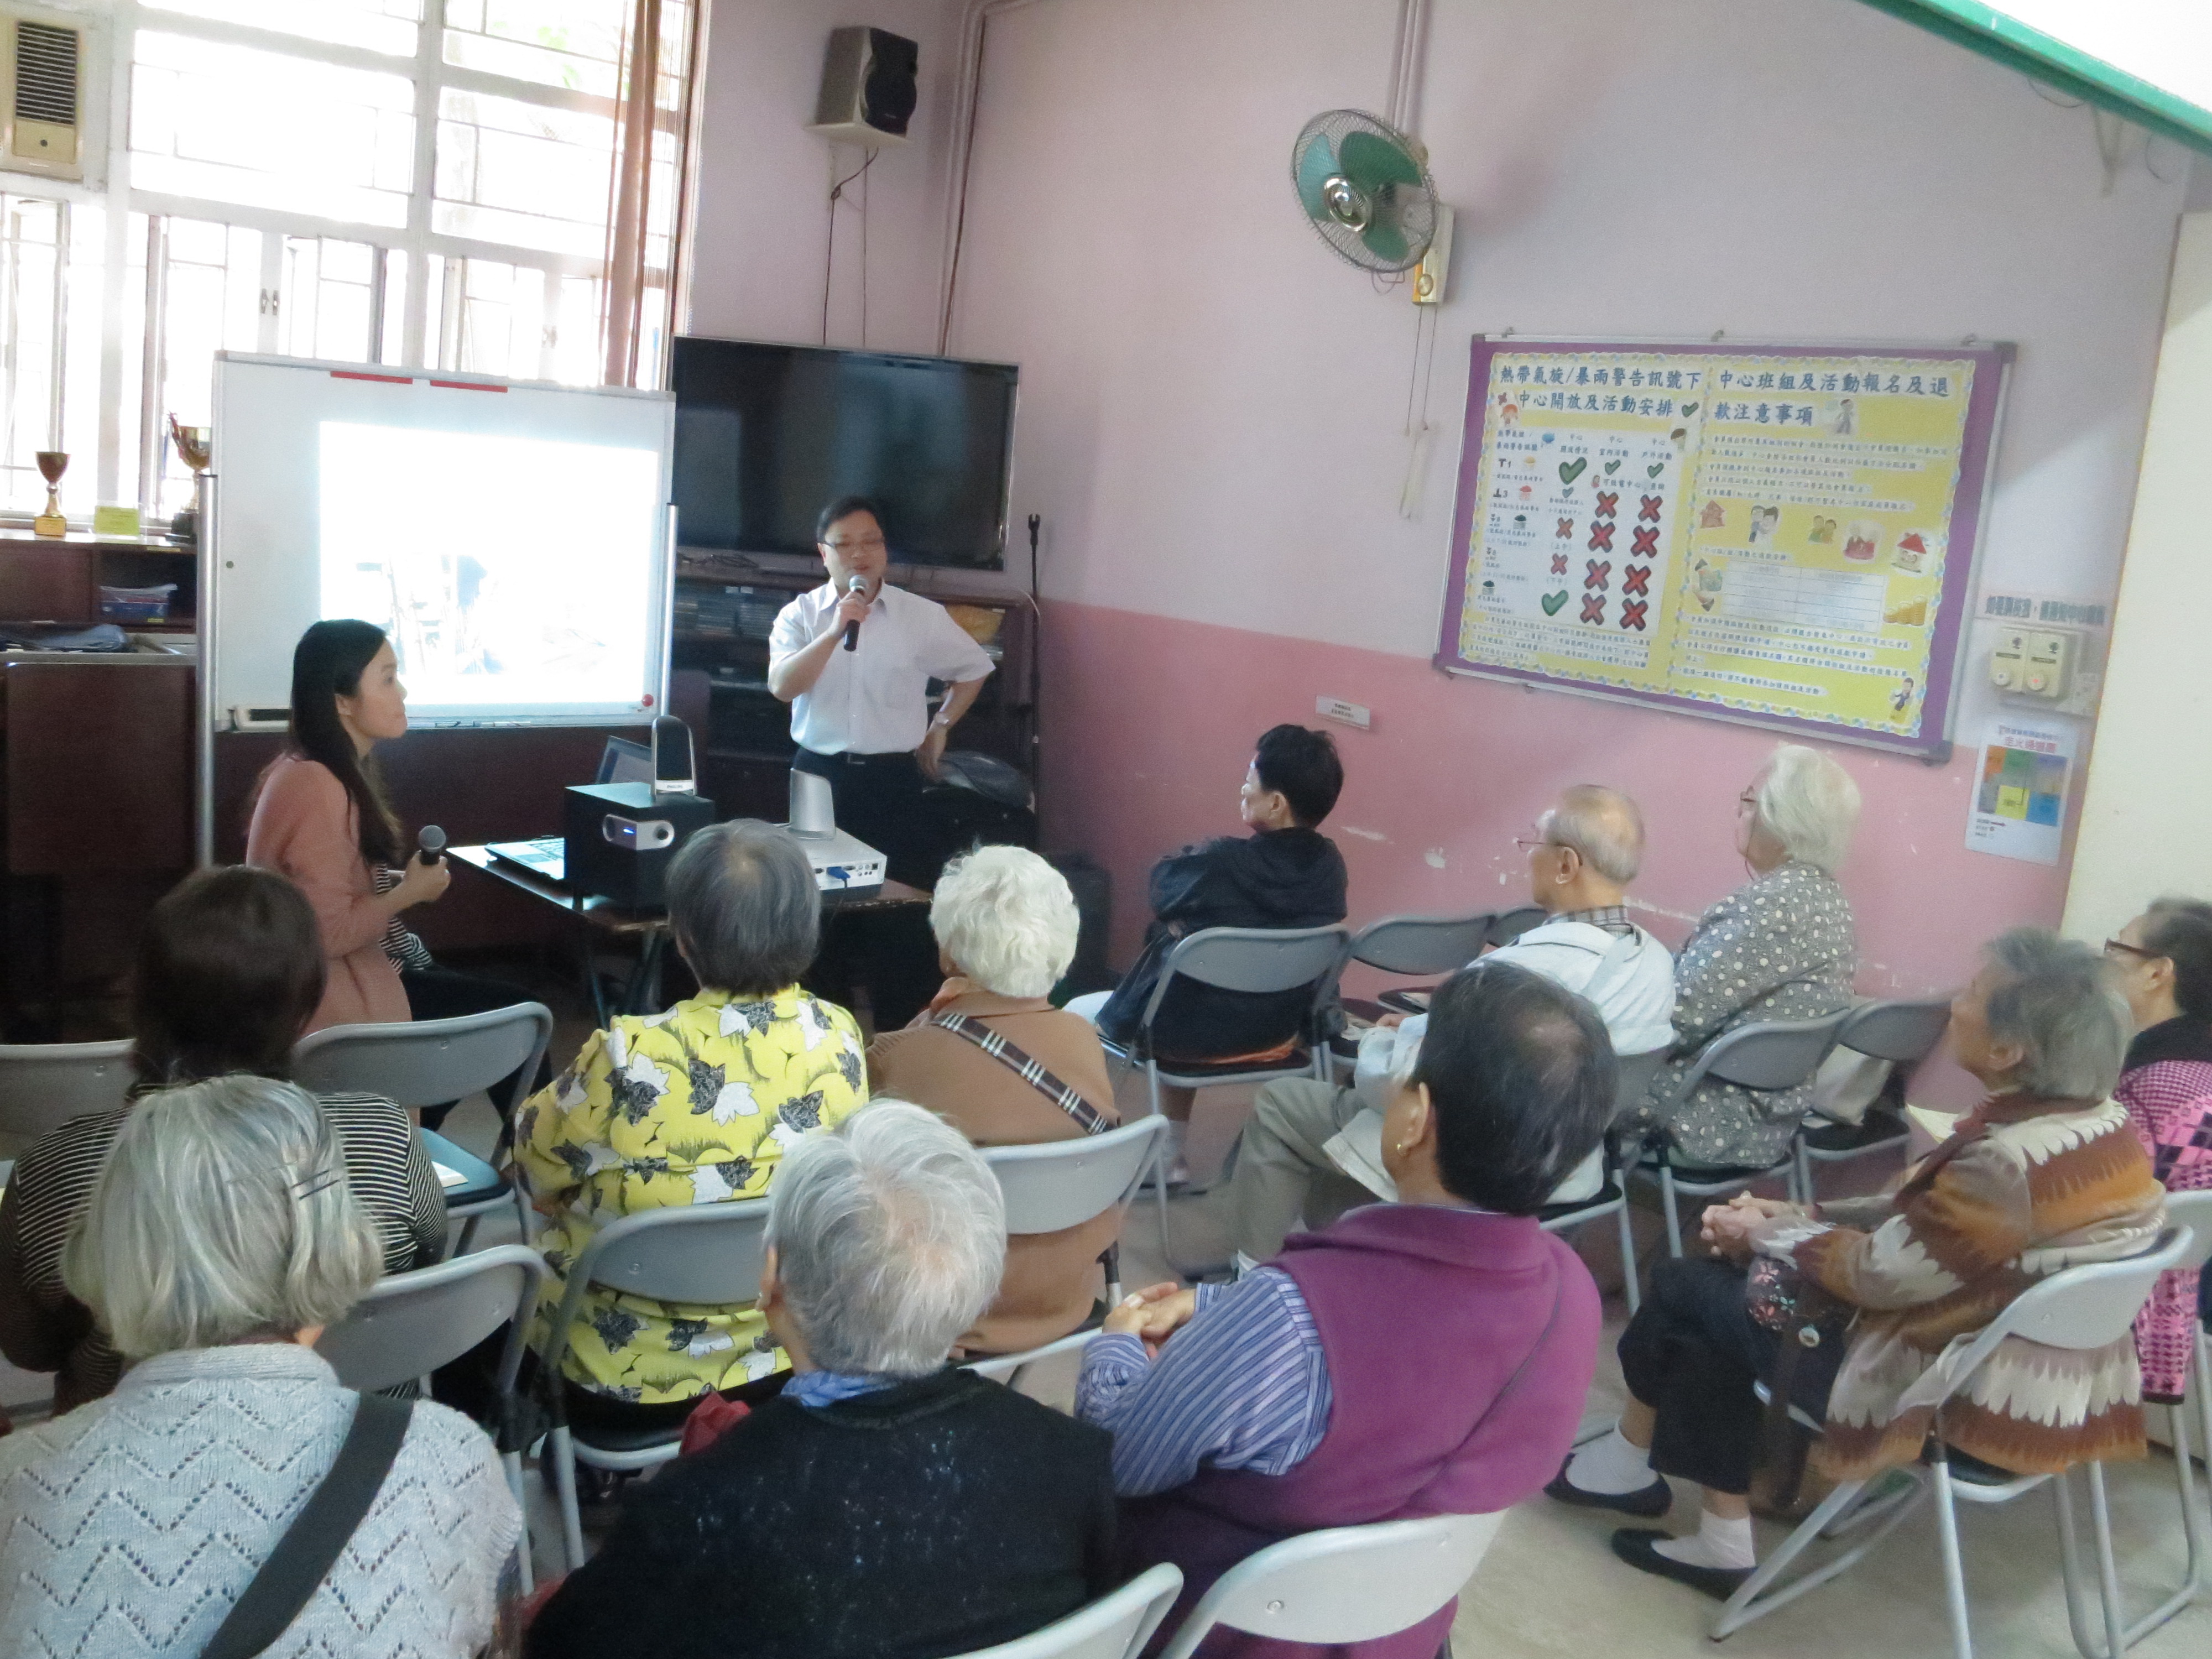 Ma Tau Wai Centre for the Elderly